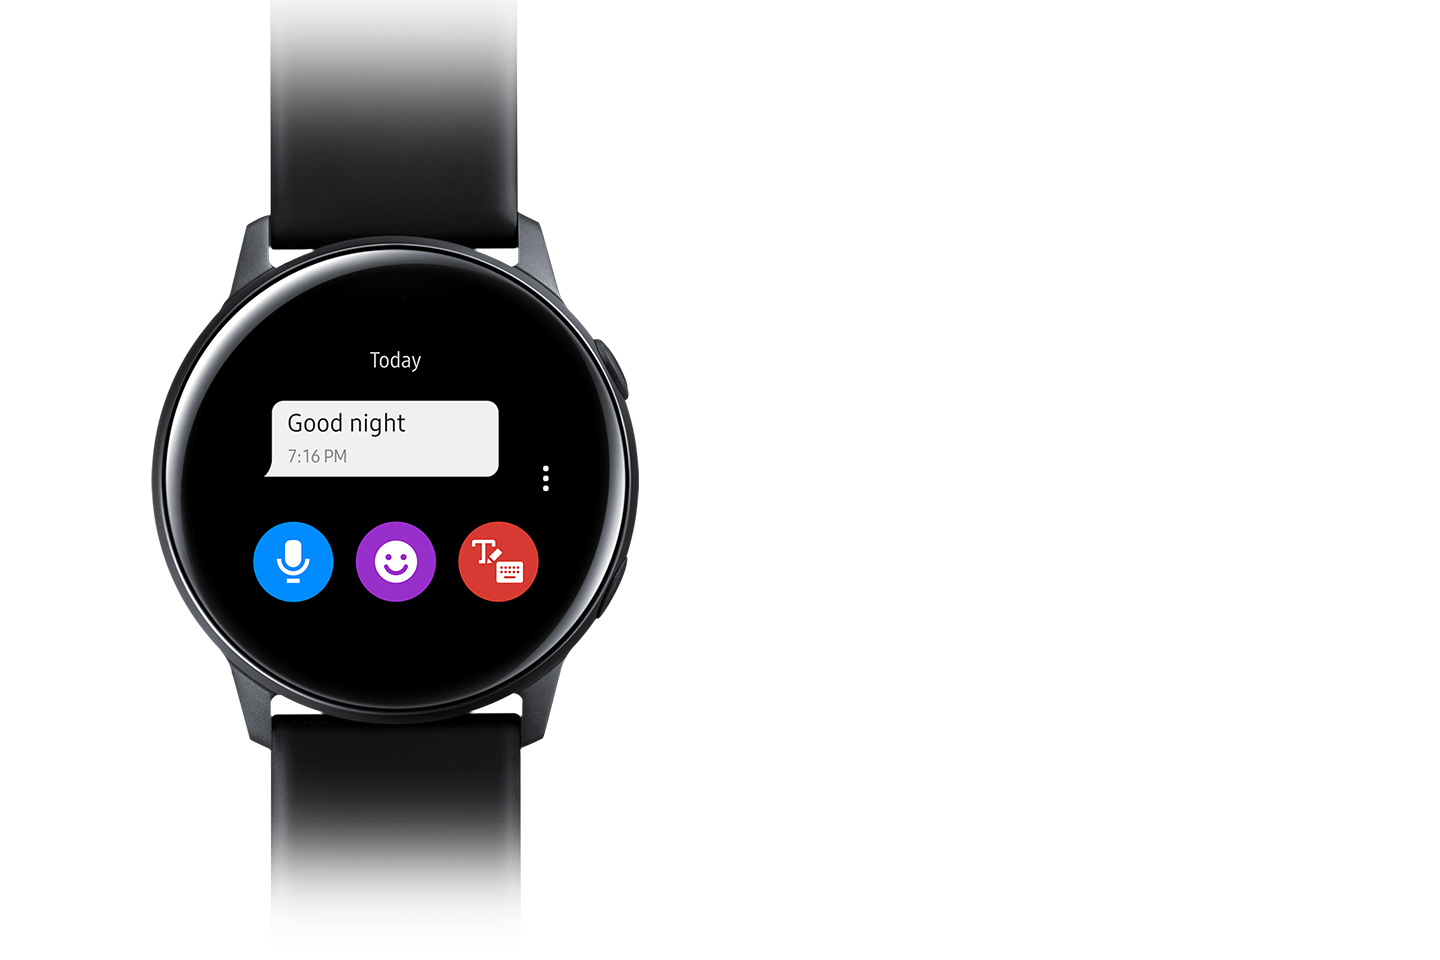 Podłącz smartfon do smartwatcha Galaxy Watch Active by otrzymywać powiadomienia i smsy bezpośrednio na zegarek